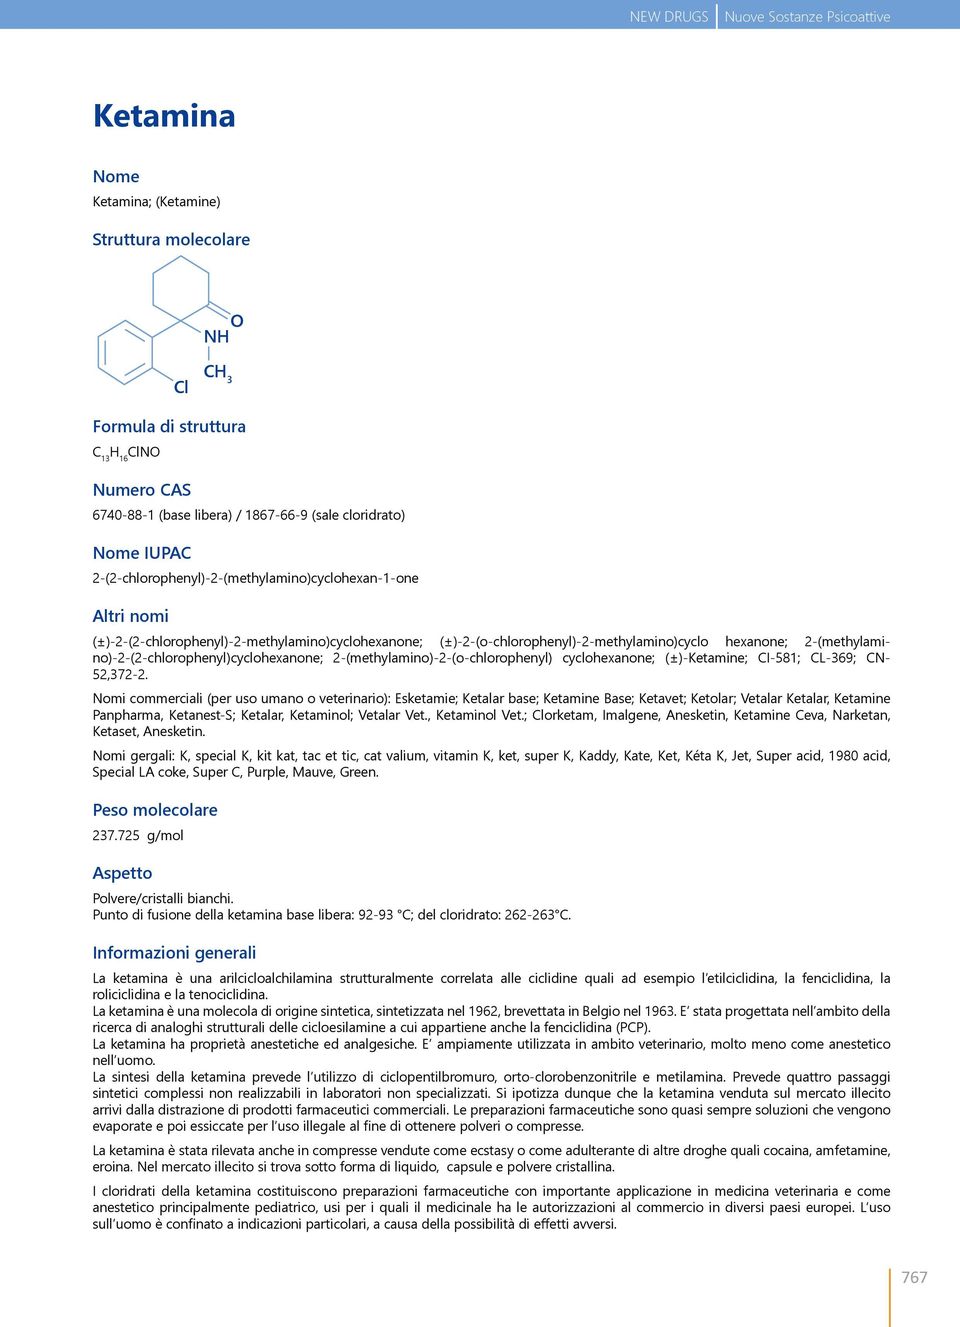 2-(methylamino)-2-(2-chlorophenyl)cyclohexanone; 2-(methylamino)-2-(o-chlorophenyl) cyclohexanone; (±)-Ketamine; CI-581; CL-369; CN- 52,372-2.